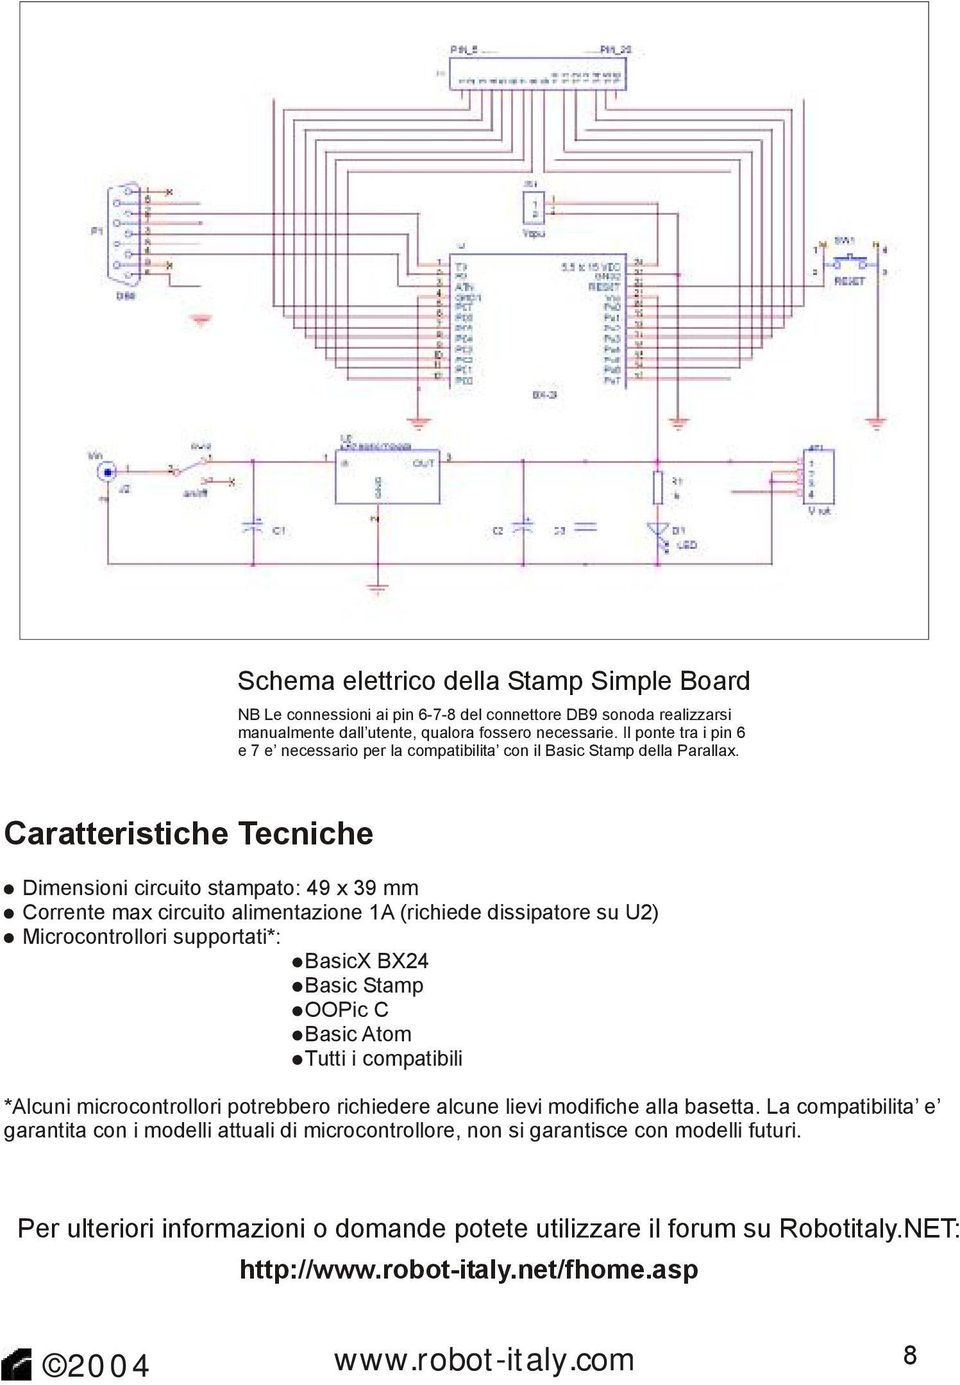 Caratteristiche Tecniche Dimensioni circuito stampato: 49 x 39 mm Corrente max circuito alimentazione 1A (richiede dissipatore su U2) Microcontrollori supportati*: BasicX BX24 Basic Stamp OOPic C